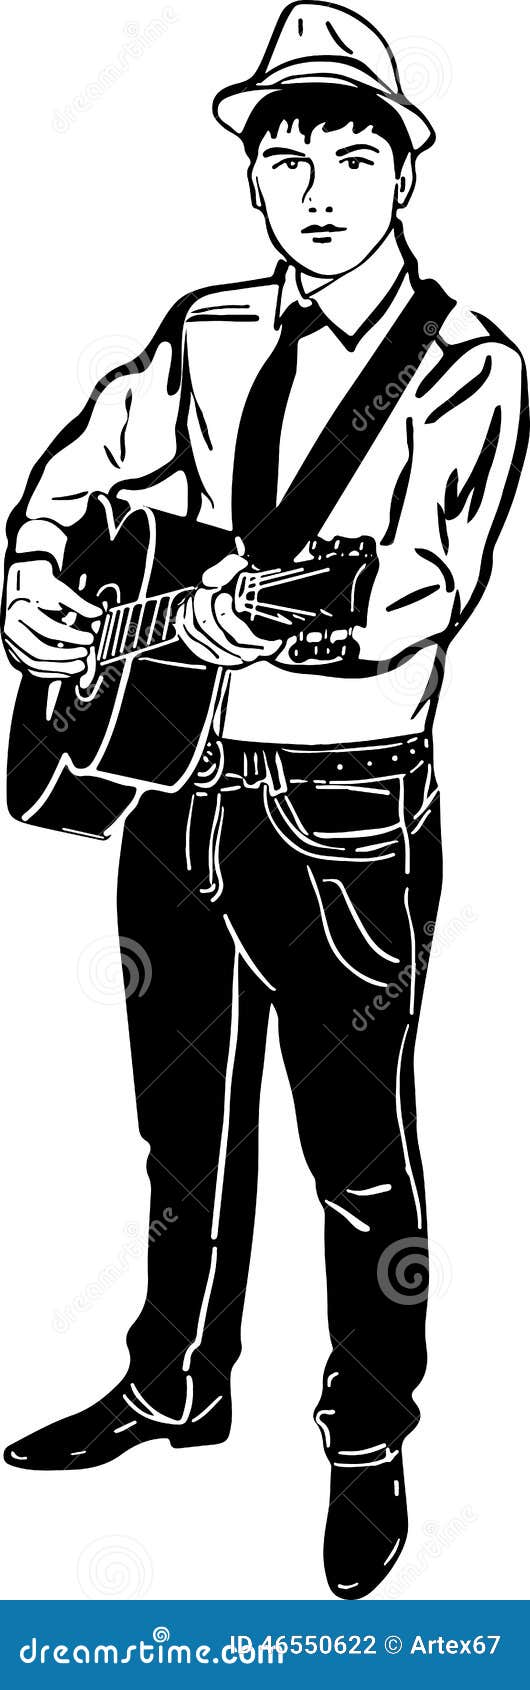 Esboço preto e branco de um homem novo em um jogo do chapéu guitarra